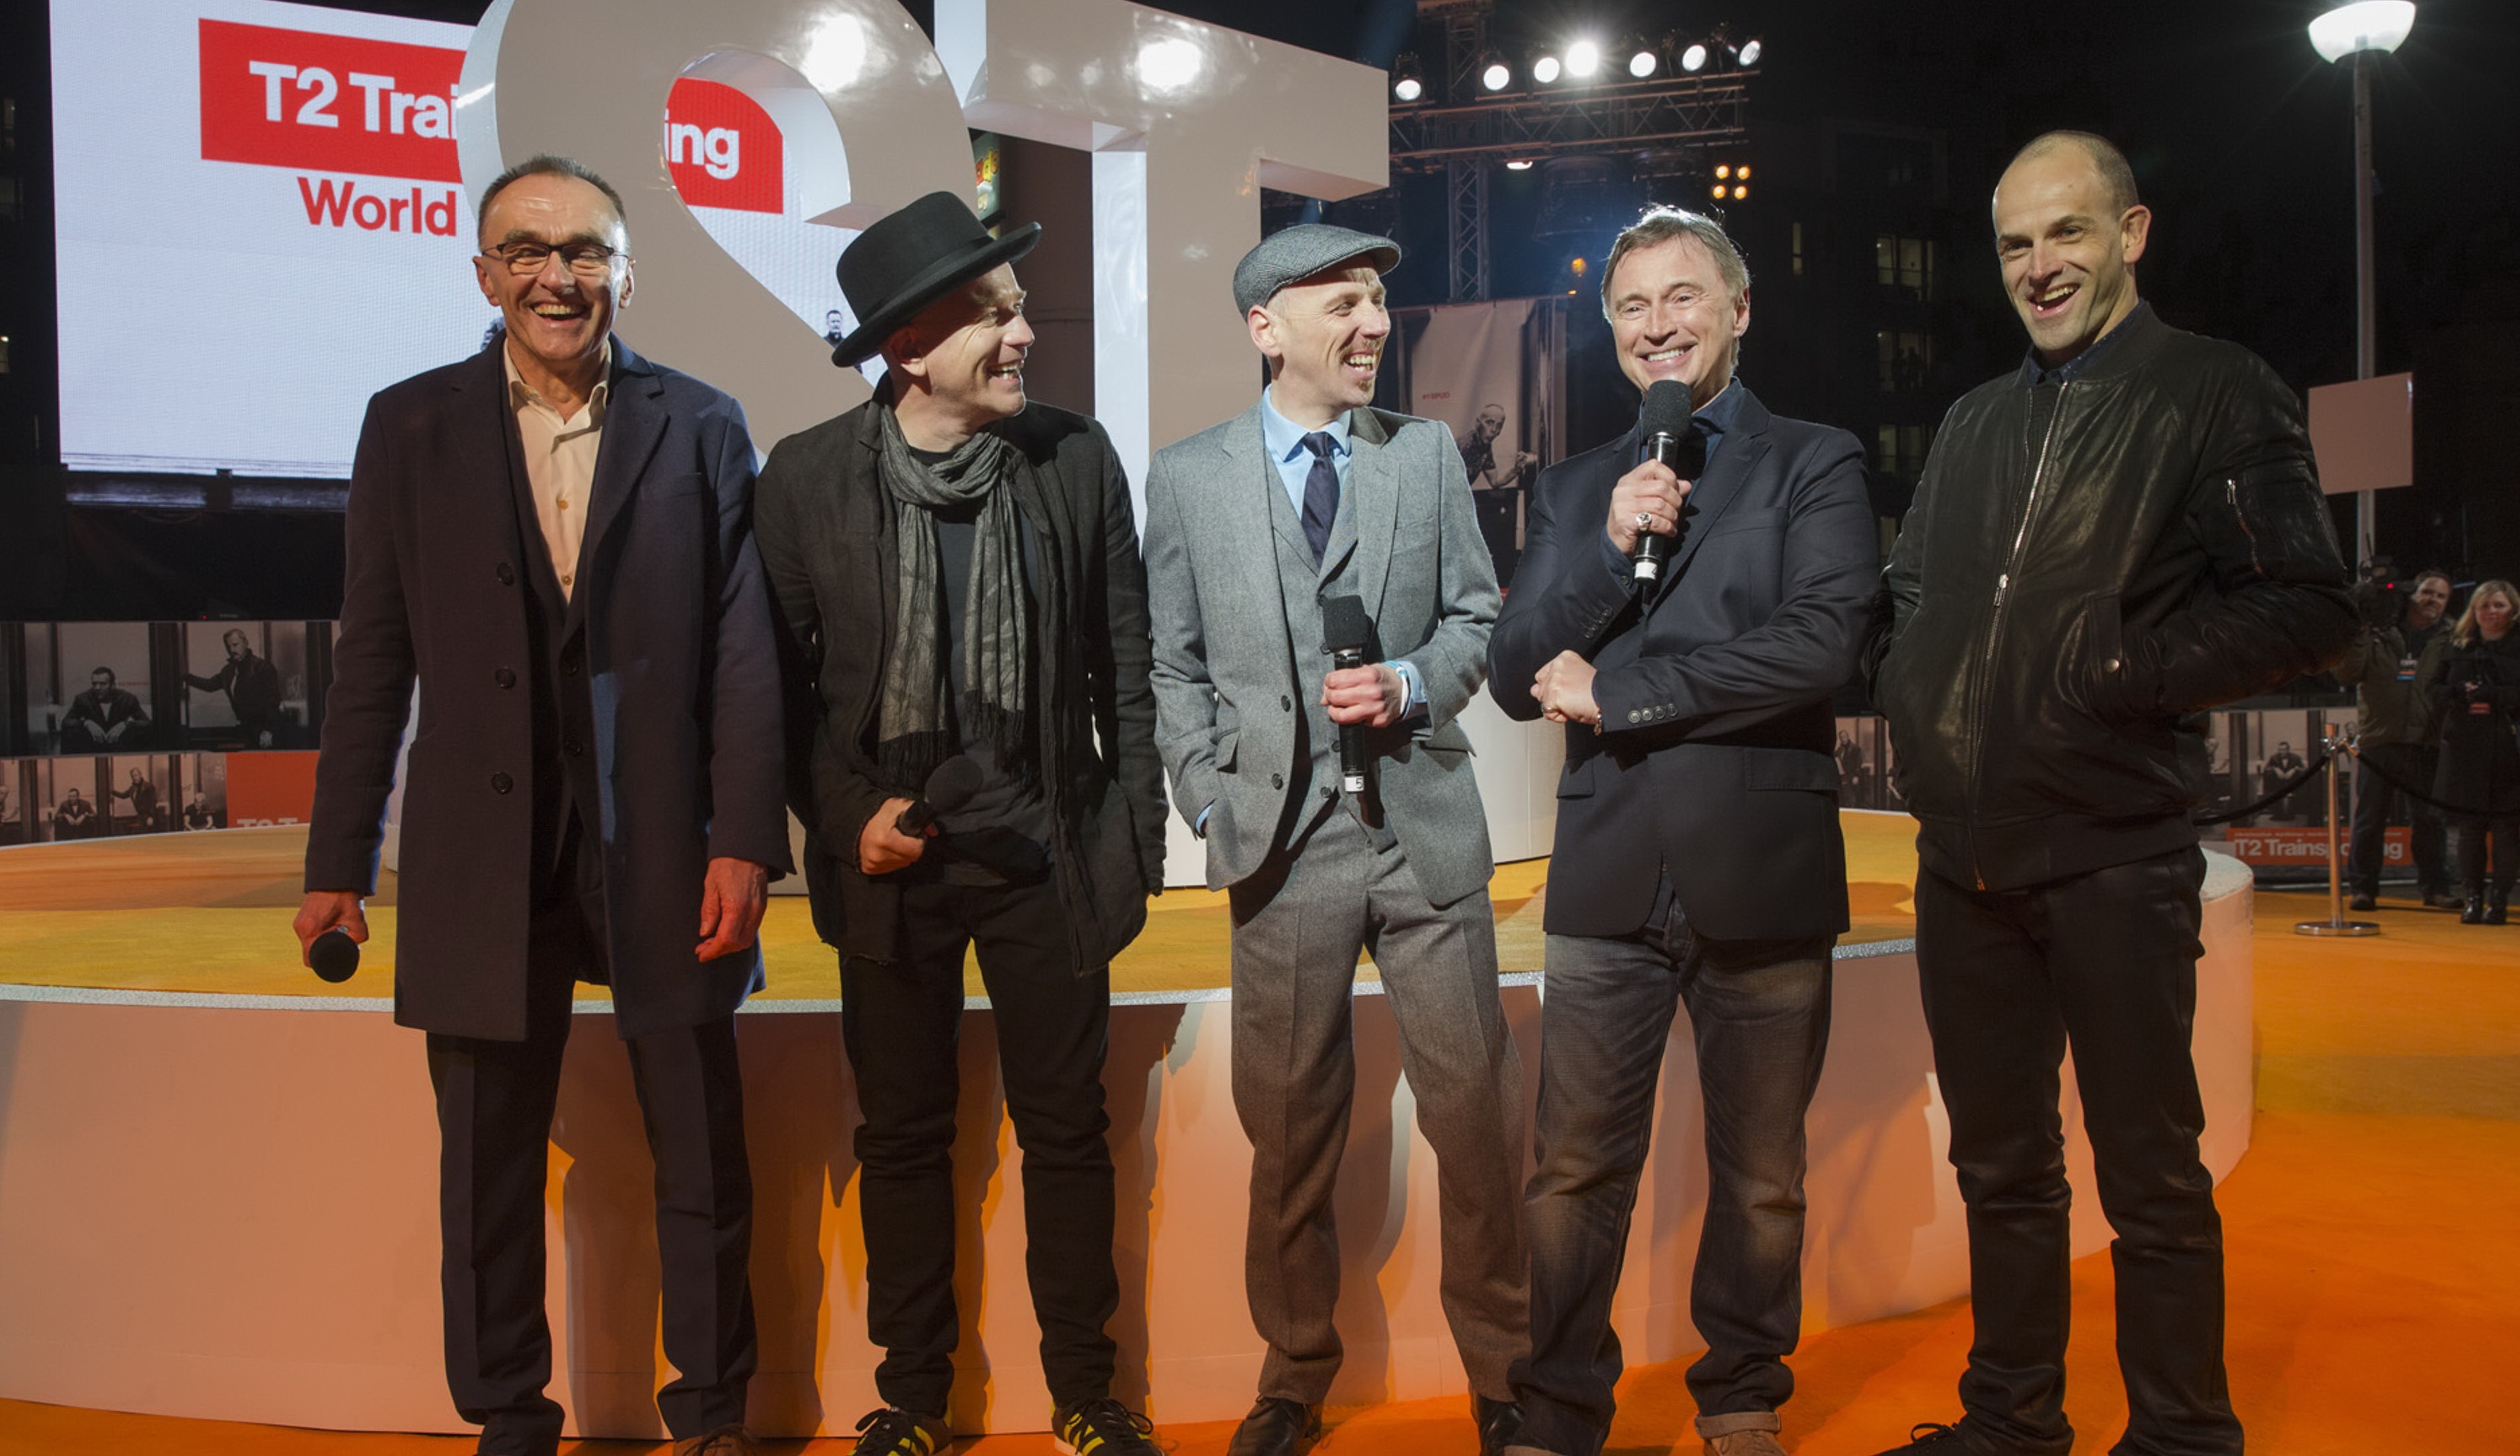 Premiéra T2 Trainspotting: Na oranžovom koberci sa stretla pôvodná partička